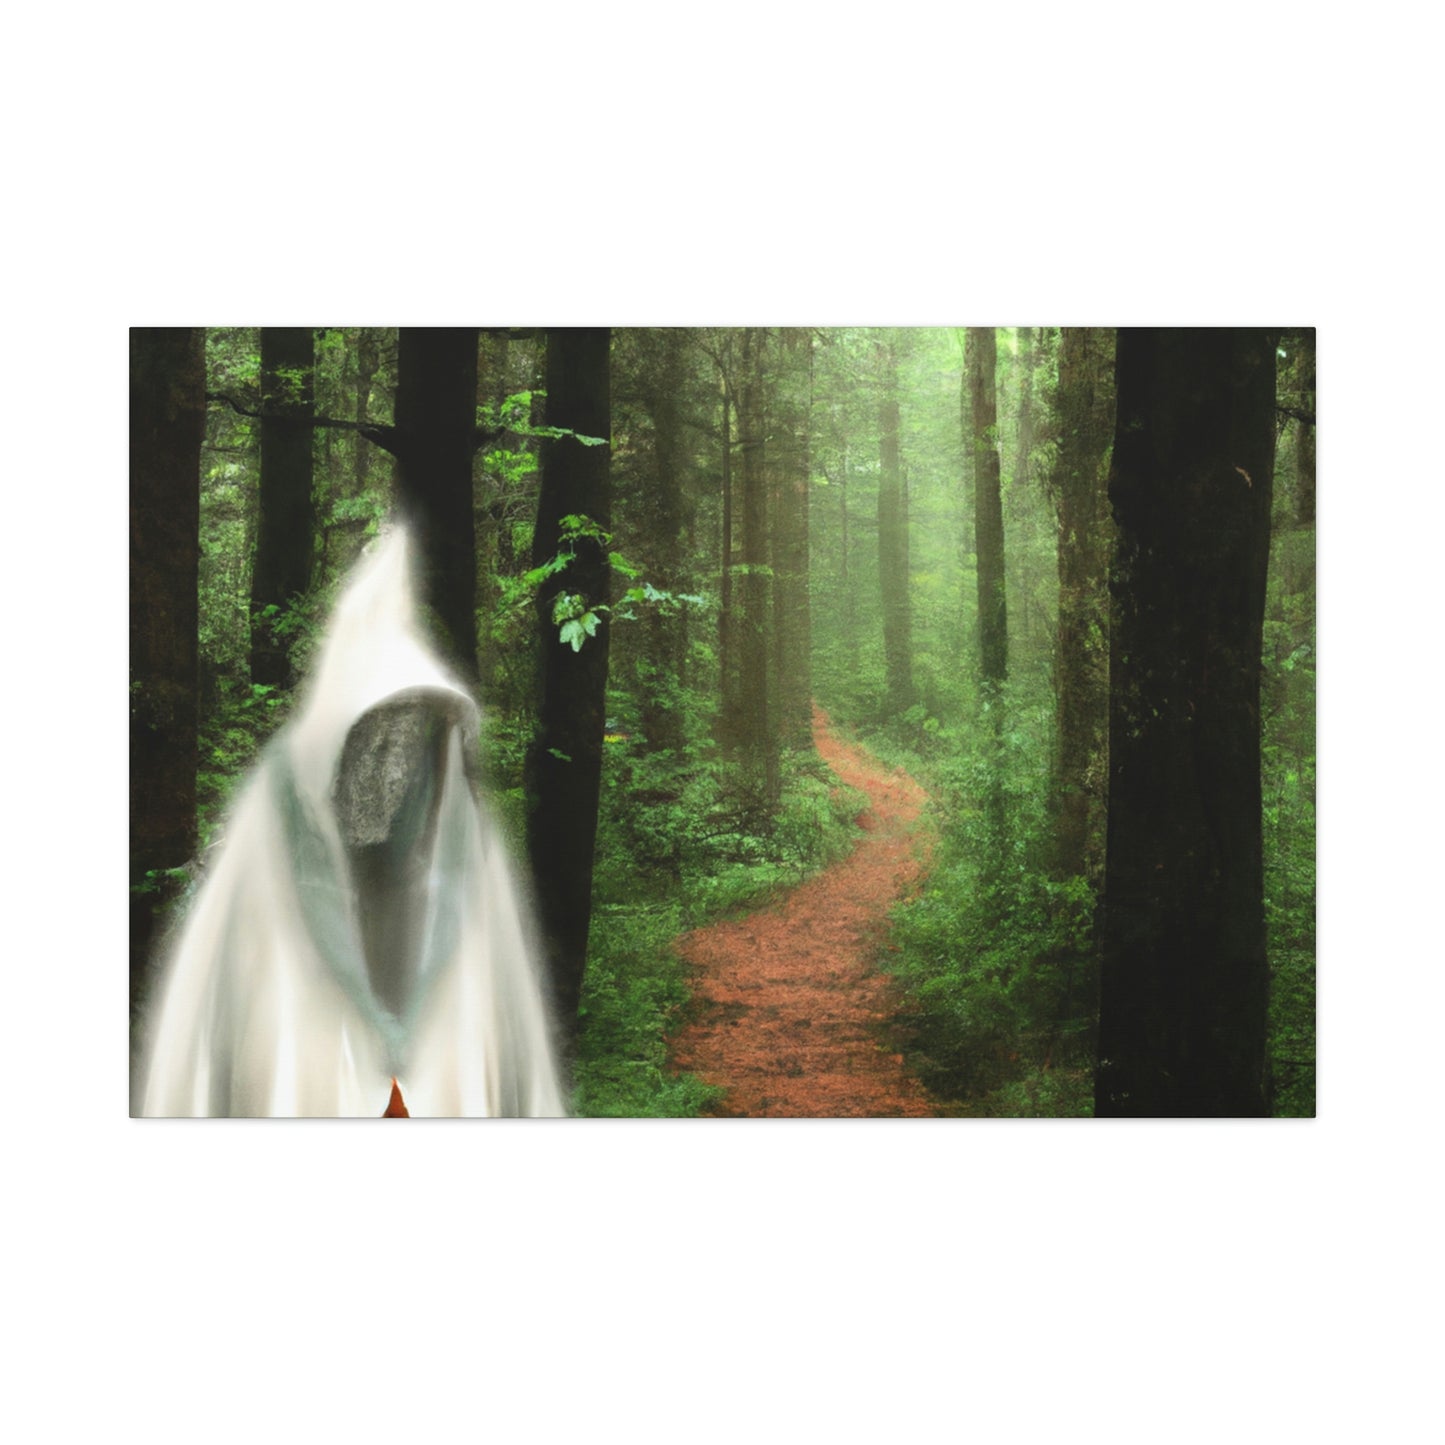 La guía del bosque misterioso - The Alien Canva